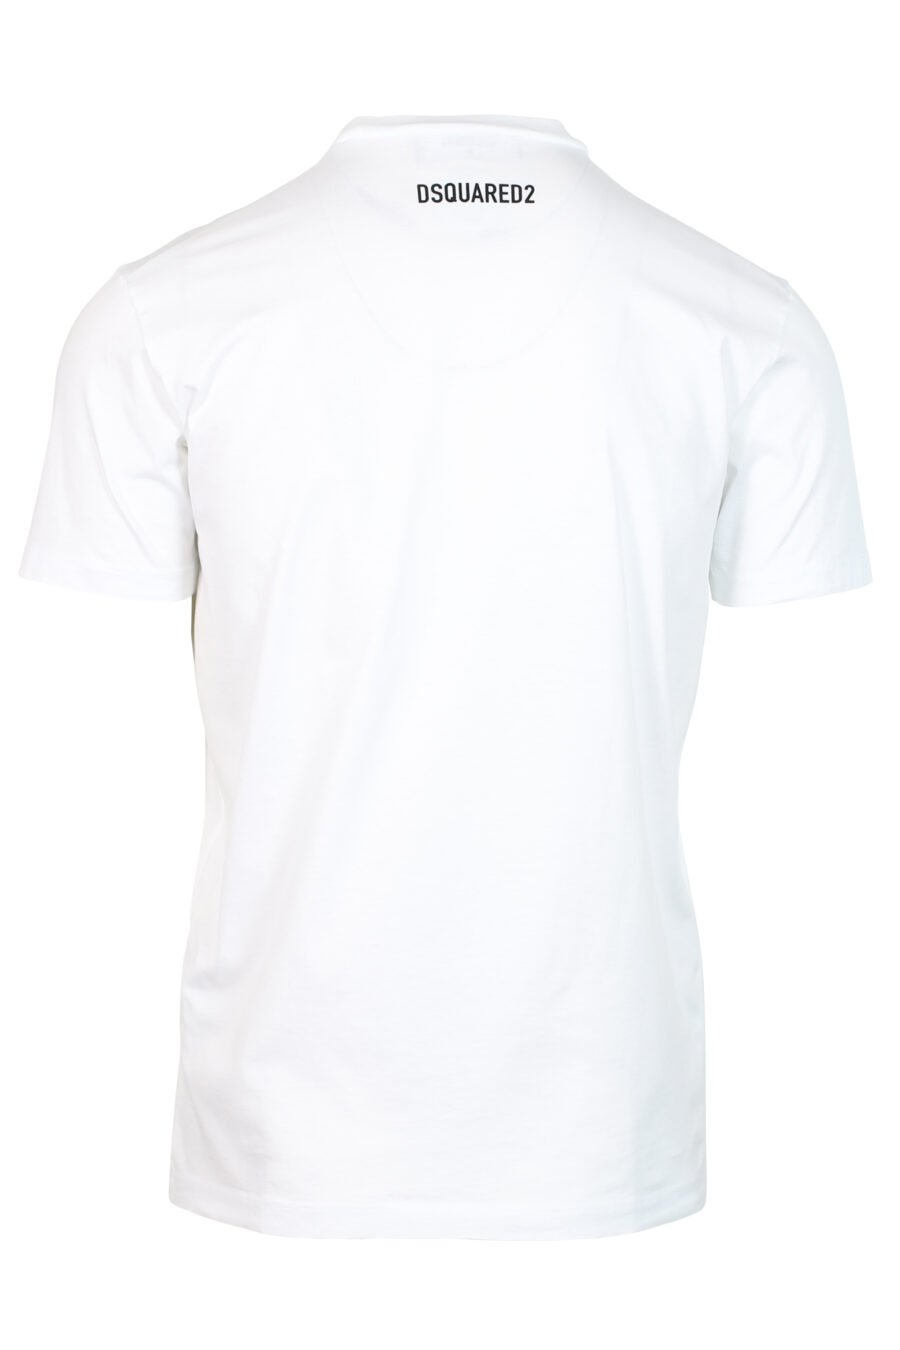 Camiseta blanca con maxilogo perro "Pixeled" - 8052134980705 2